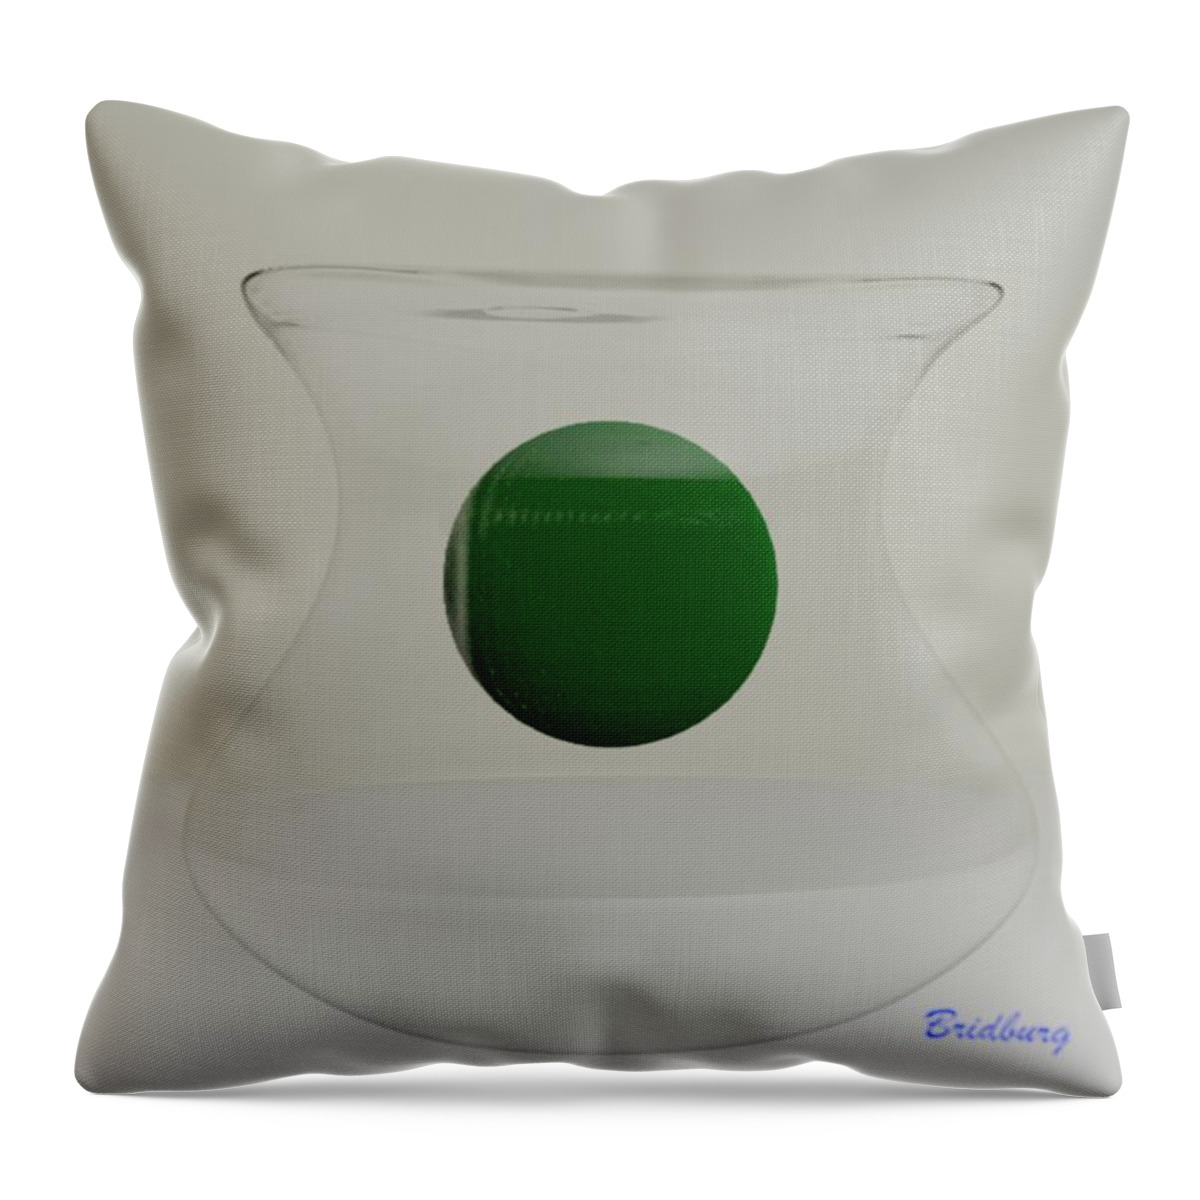 Nft Throw Pillow featuring the digital art 201 Spittoon by David Bridburg